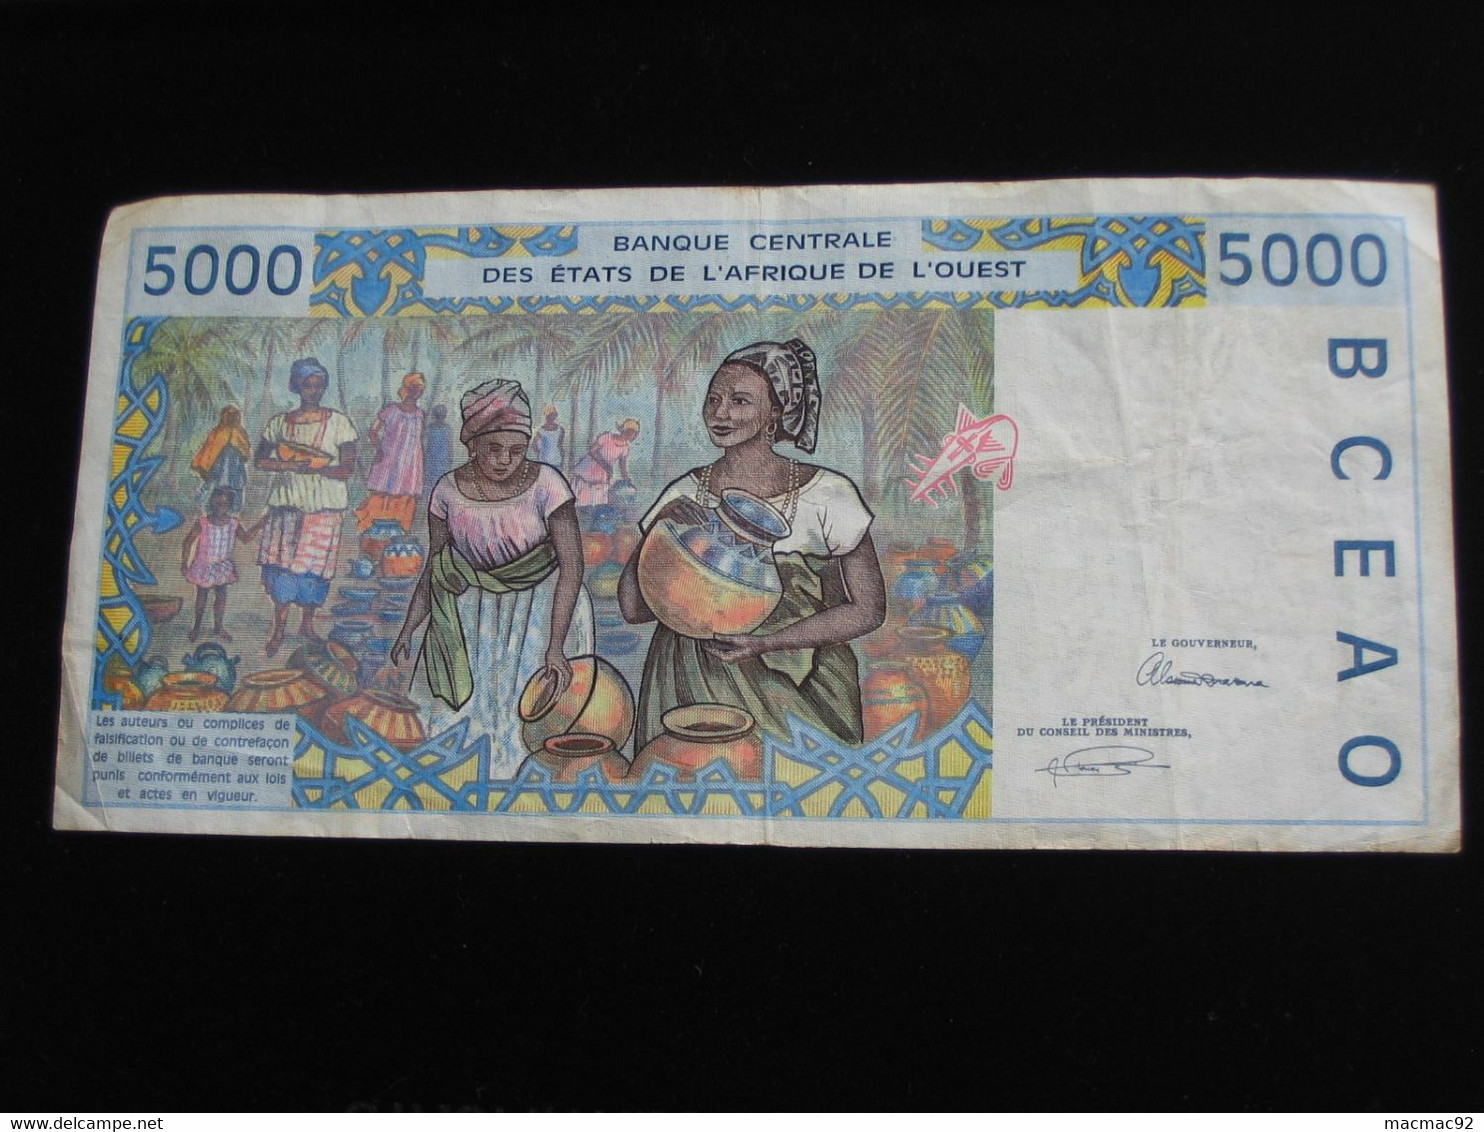 SENEGAL - 5000 Francs 1993 - Banque Centrale Des états De L'Afrique De L'ouest  **** EN  ACHAT IMMEDIAT  **** - Sénégal